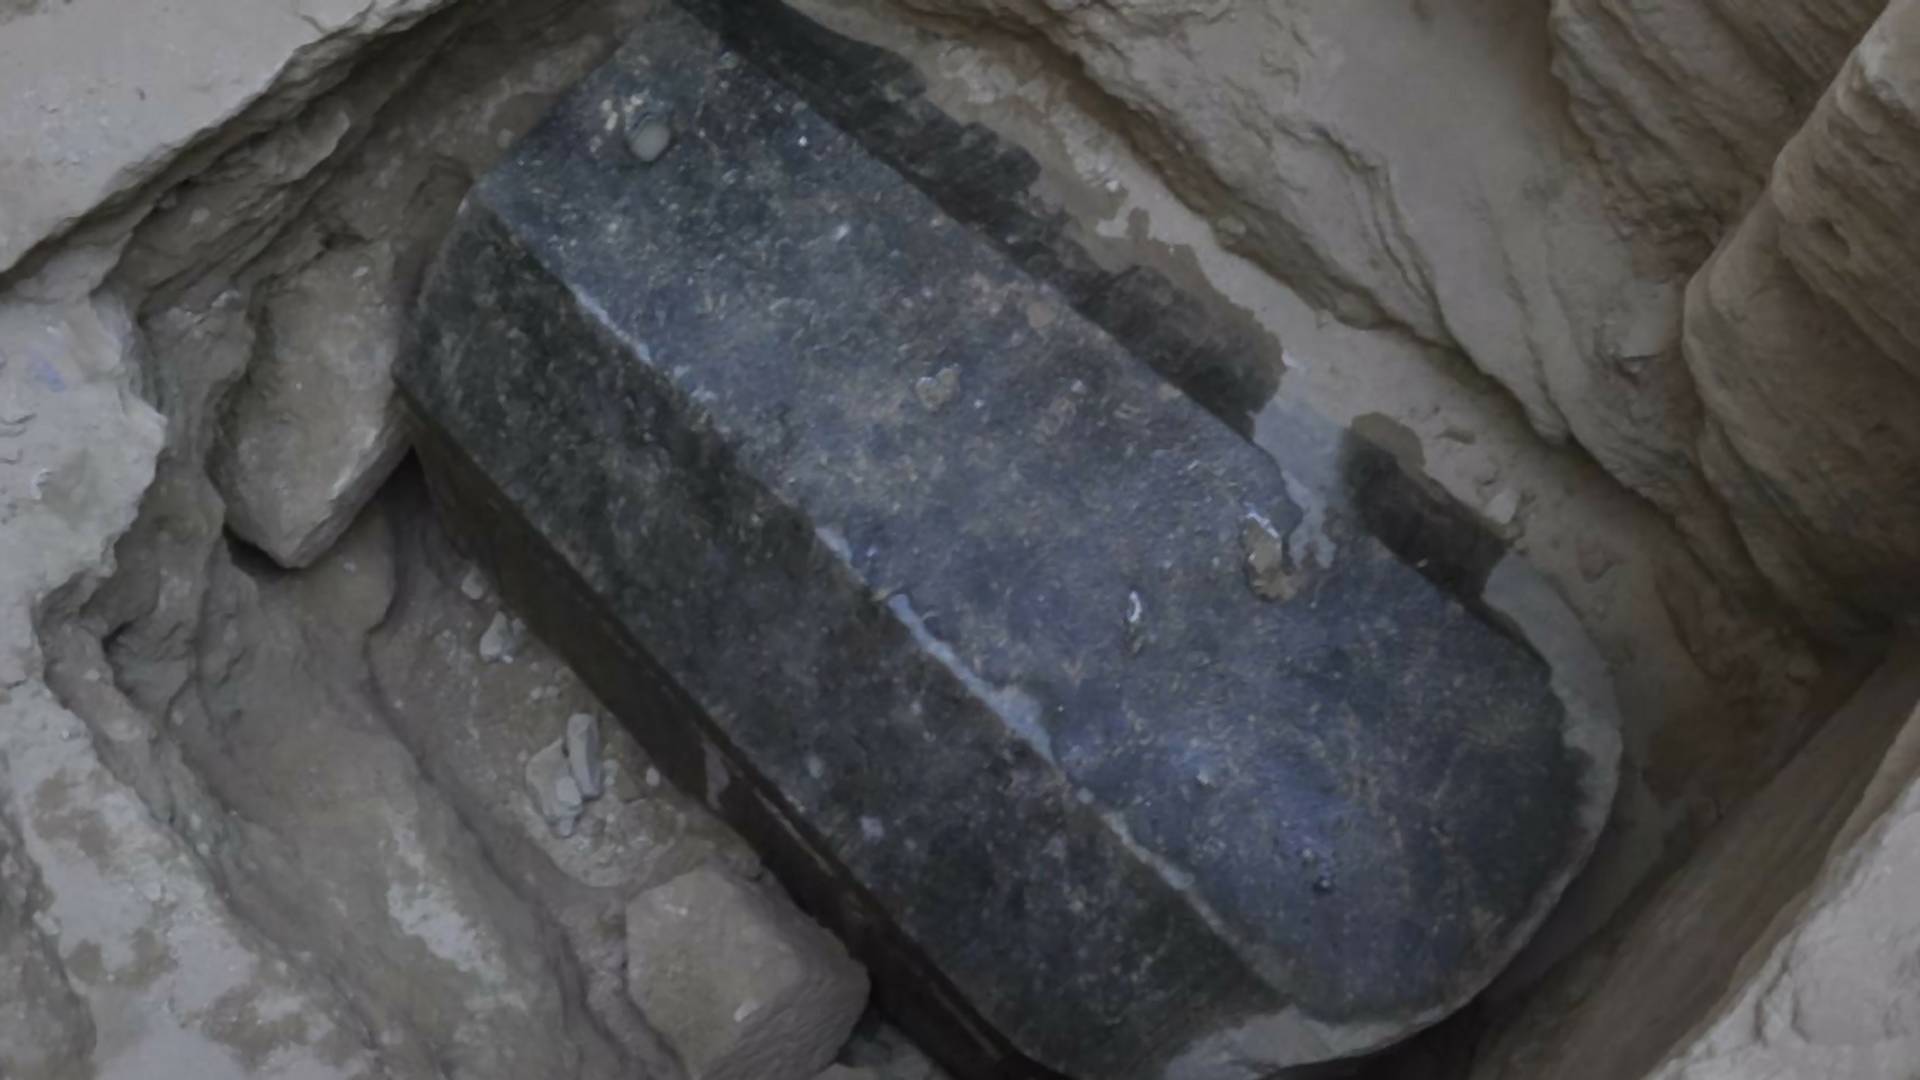 2000 rokov starý sarkofág napokon otvorili. Čo ukrýval?